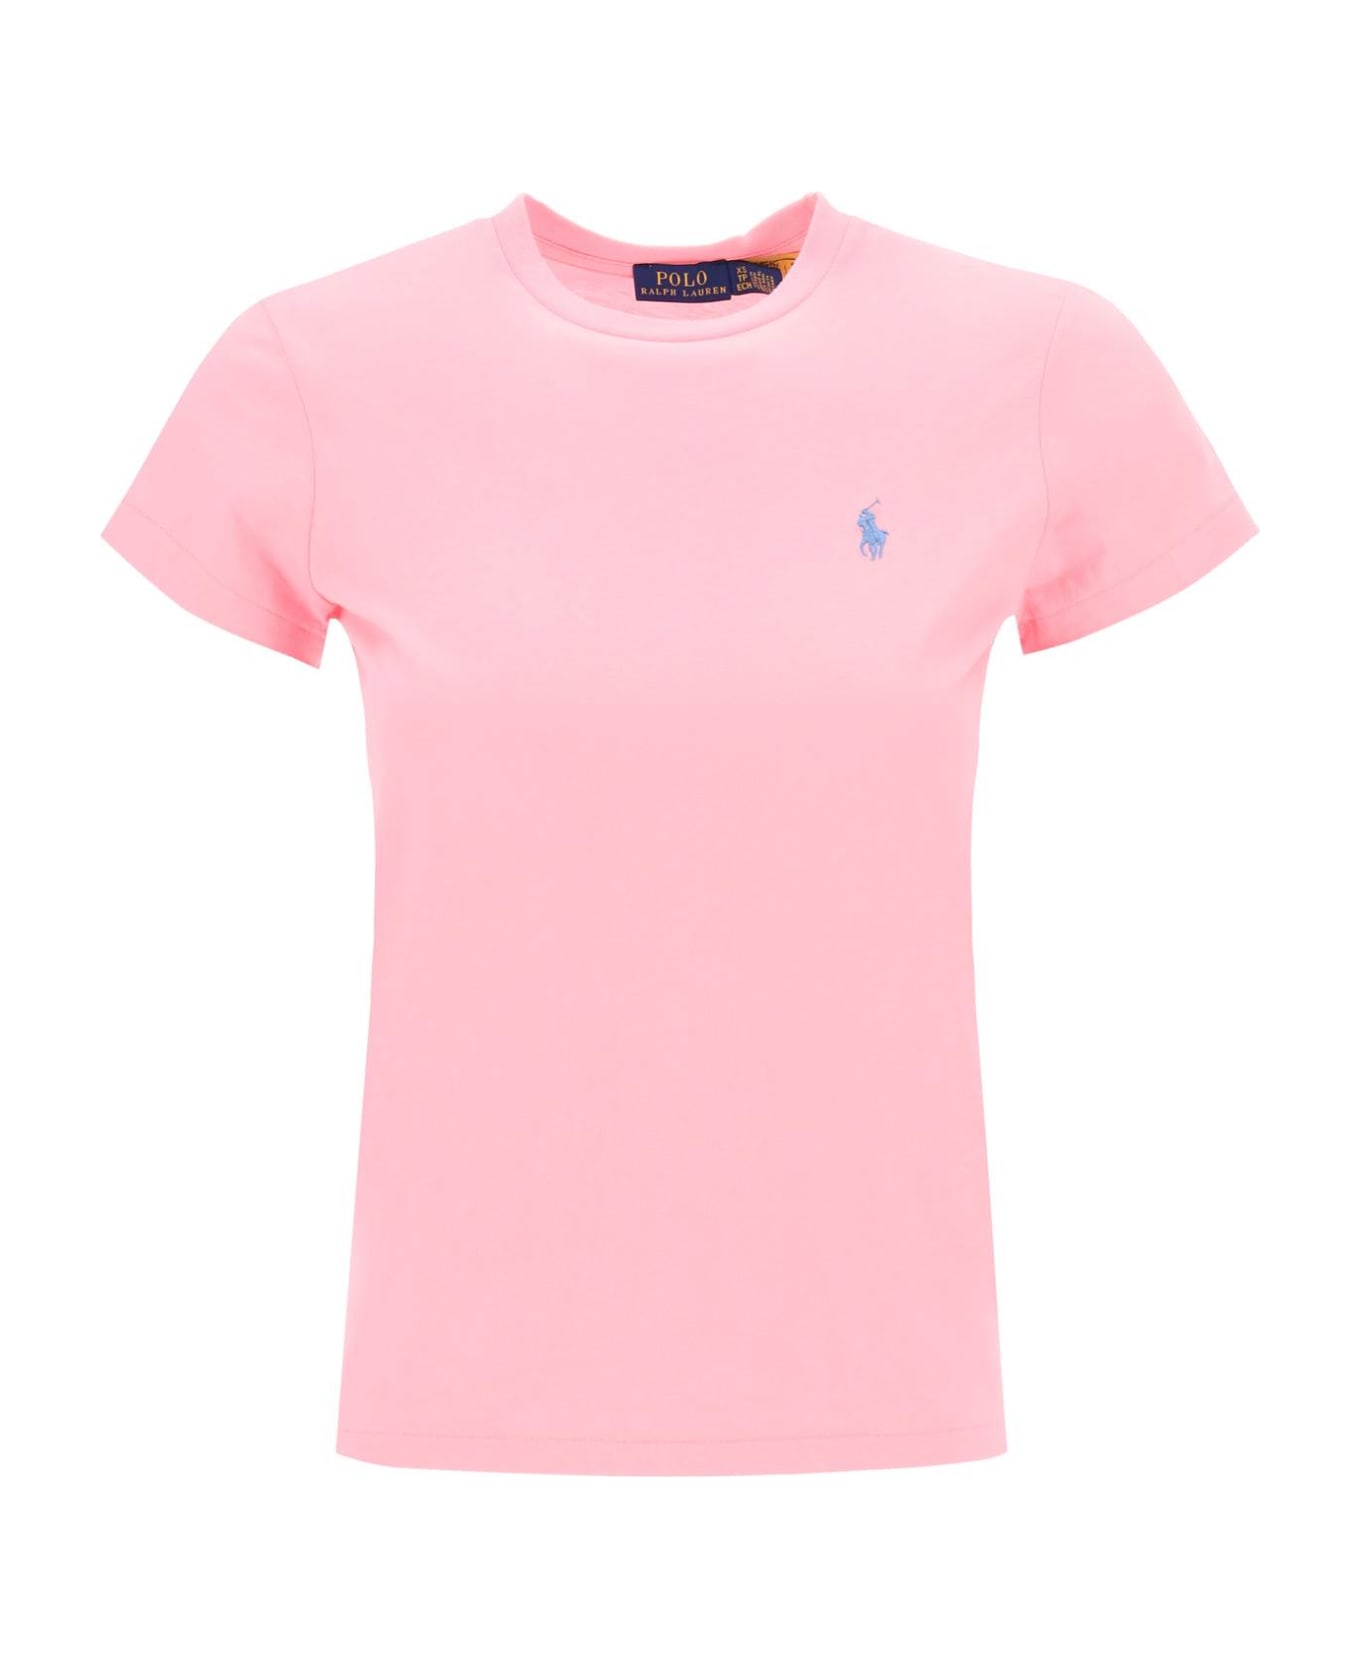 Polo Ralph Lauren Light Cotton T-shirt - COURSE PINK (Pink)